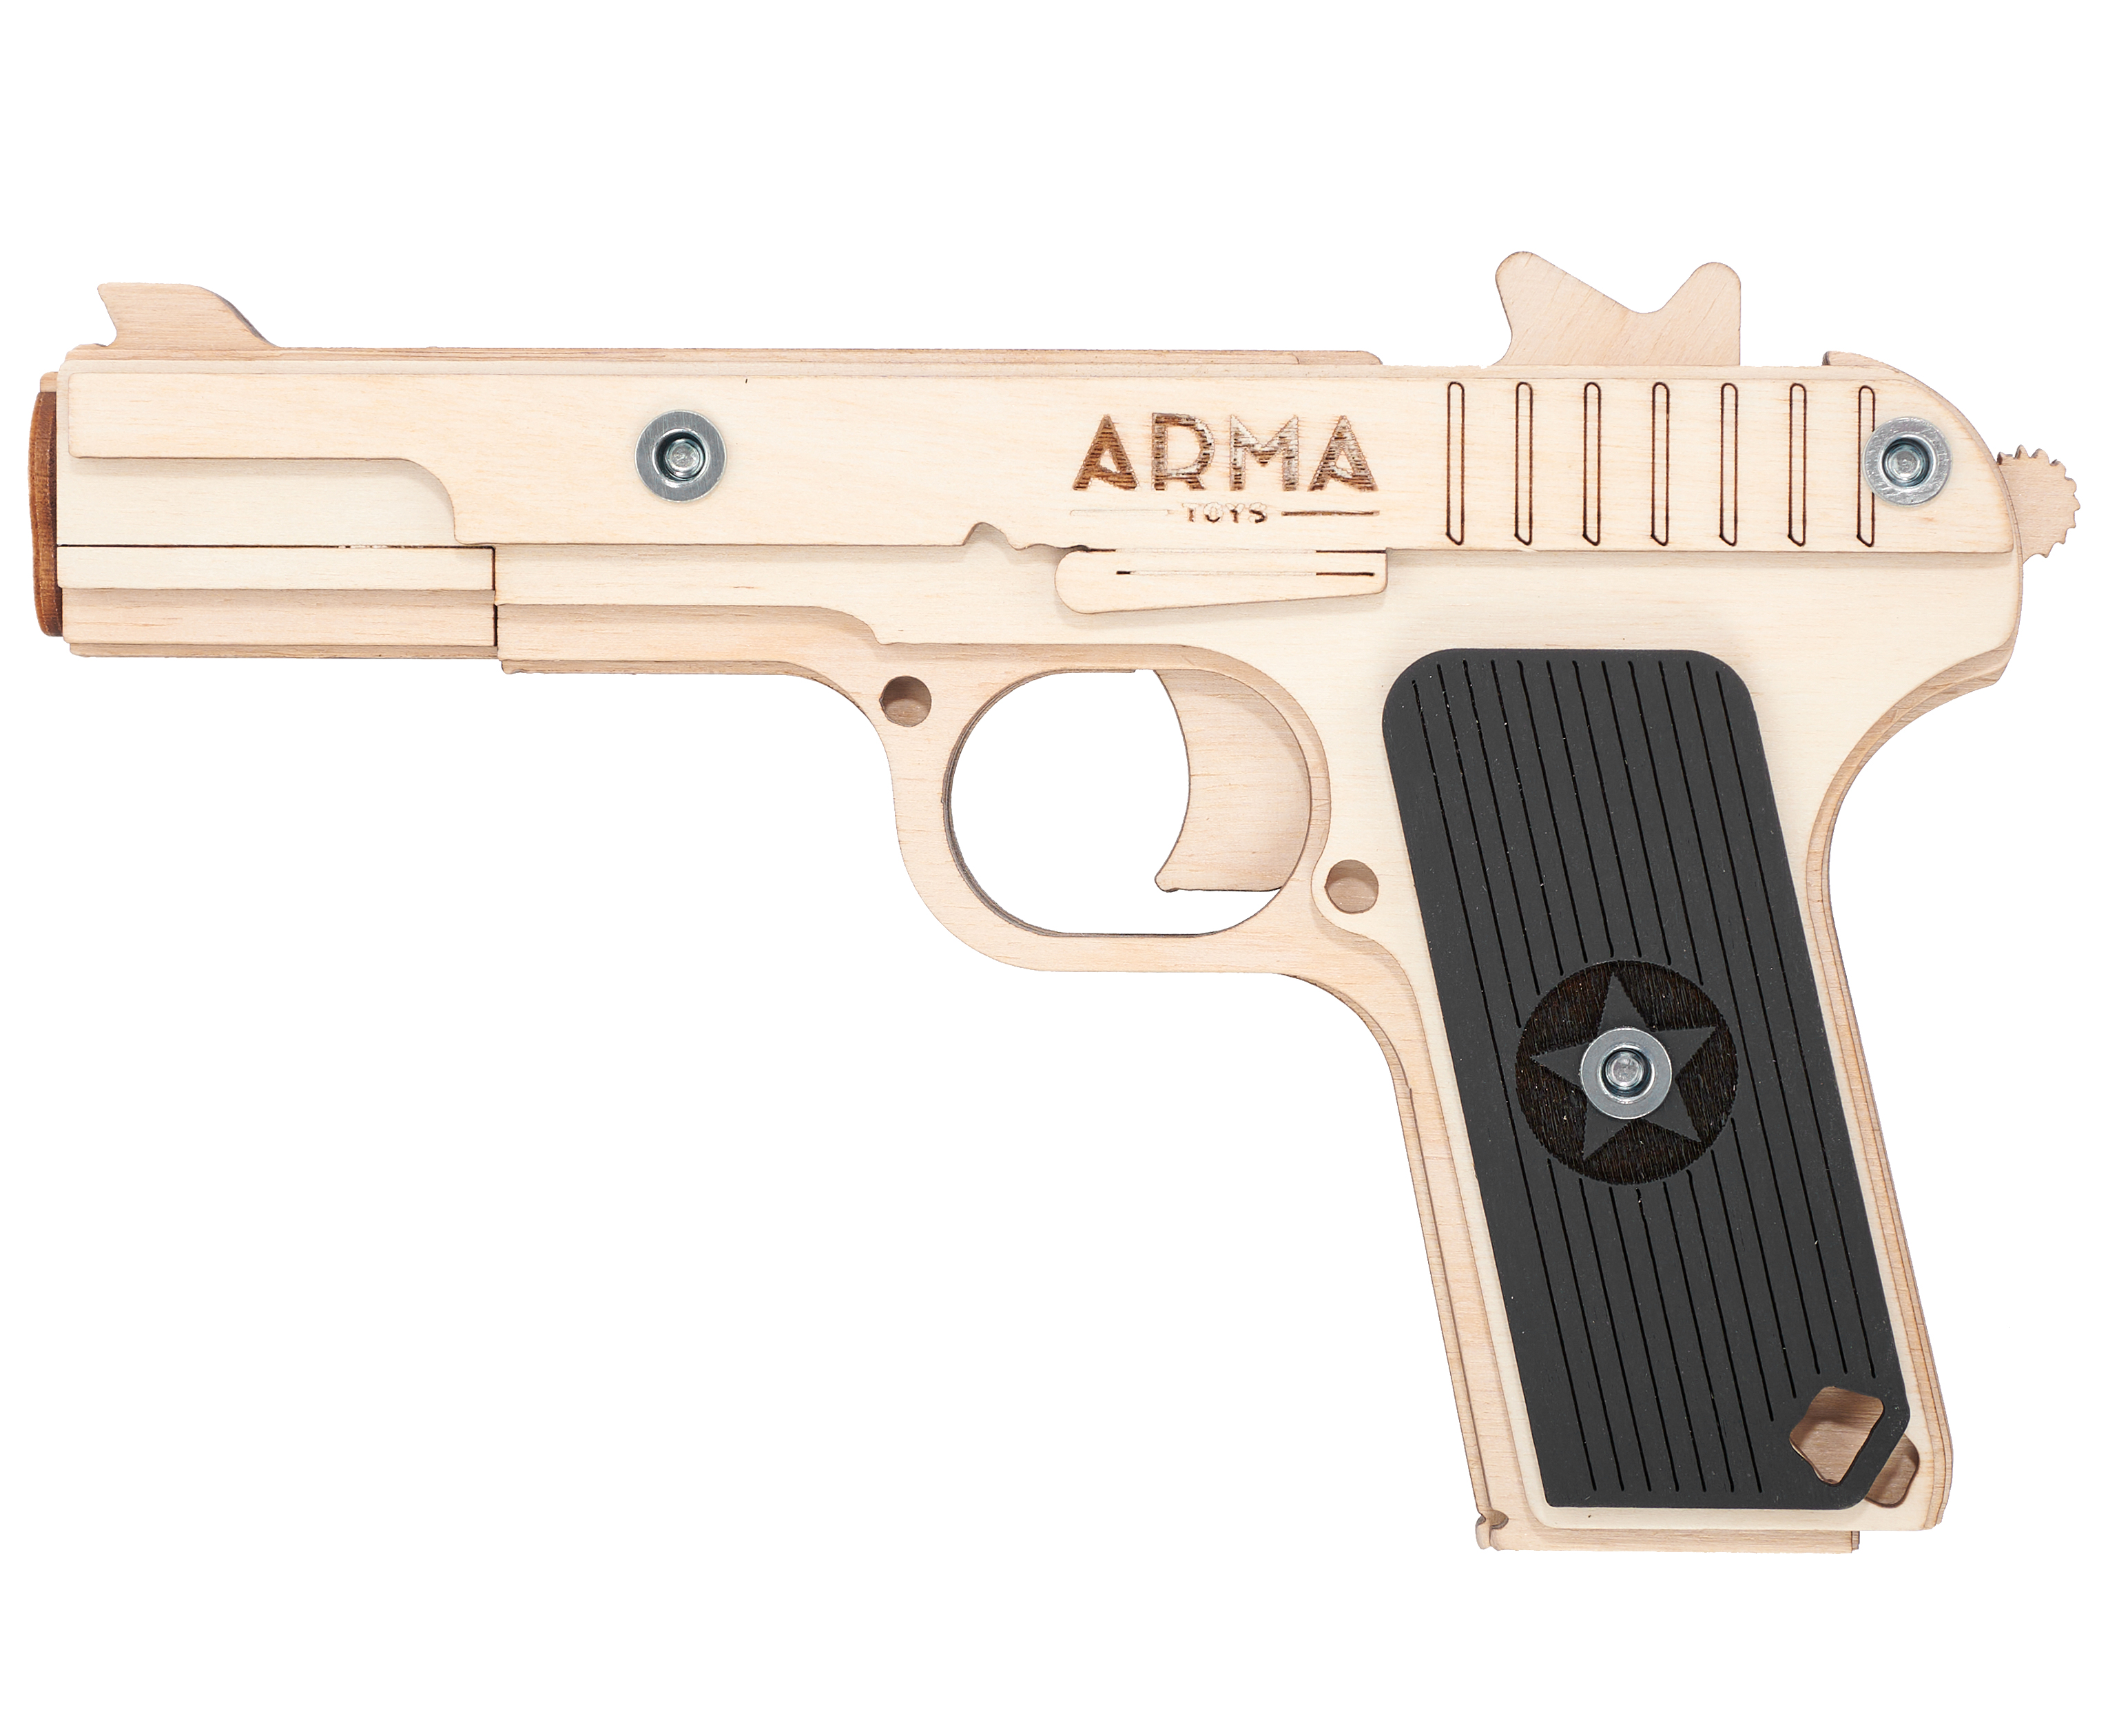 Резинкострел игрушечный Arma toys пистолет ТТ макет, Токарев, AT019 резинкострел arma toys пистолет стечкина макет апс at009k окрашенный